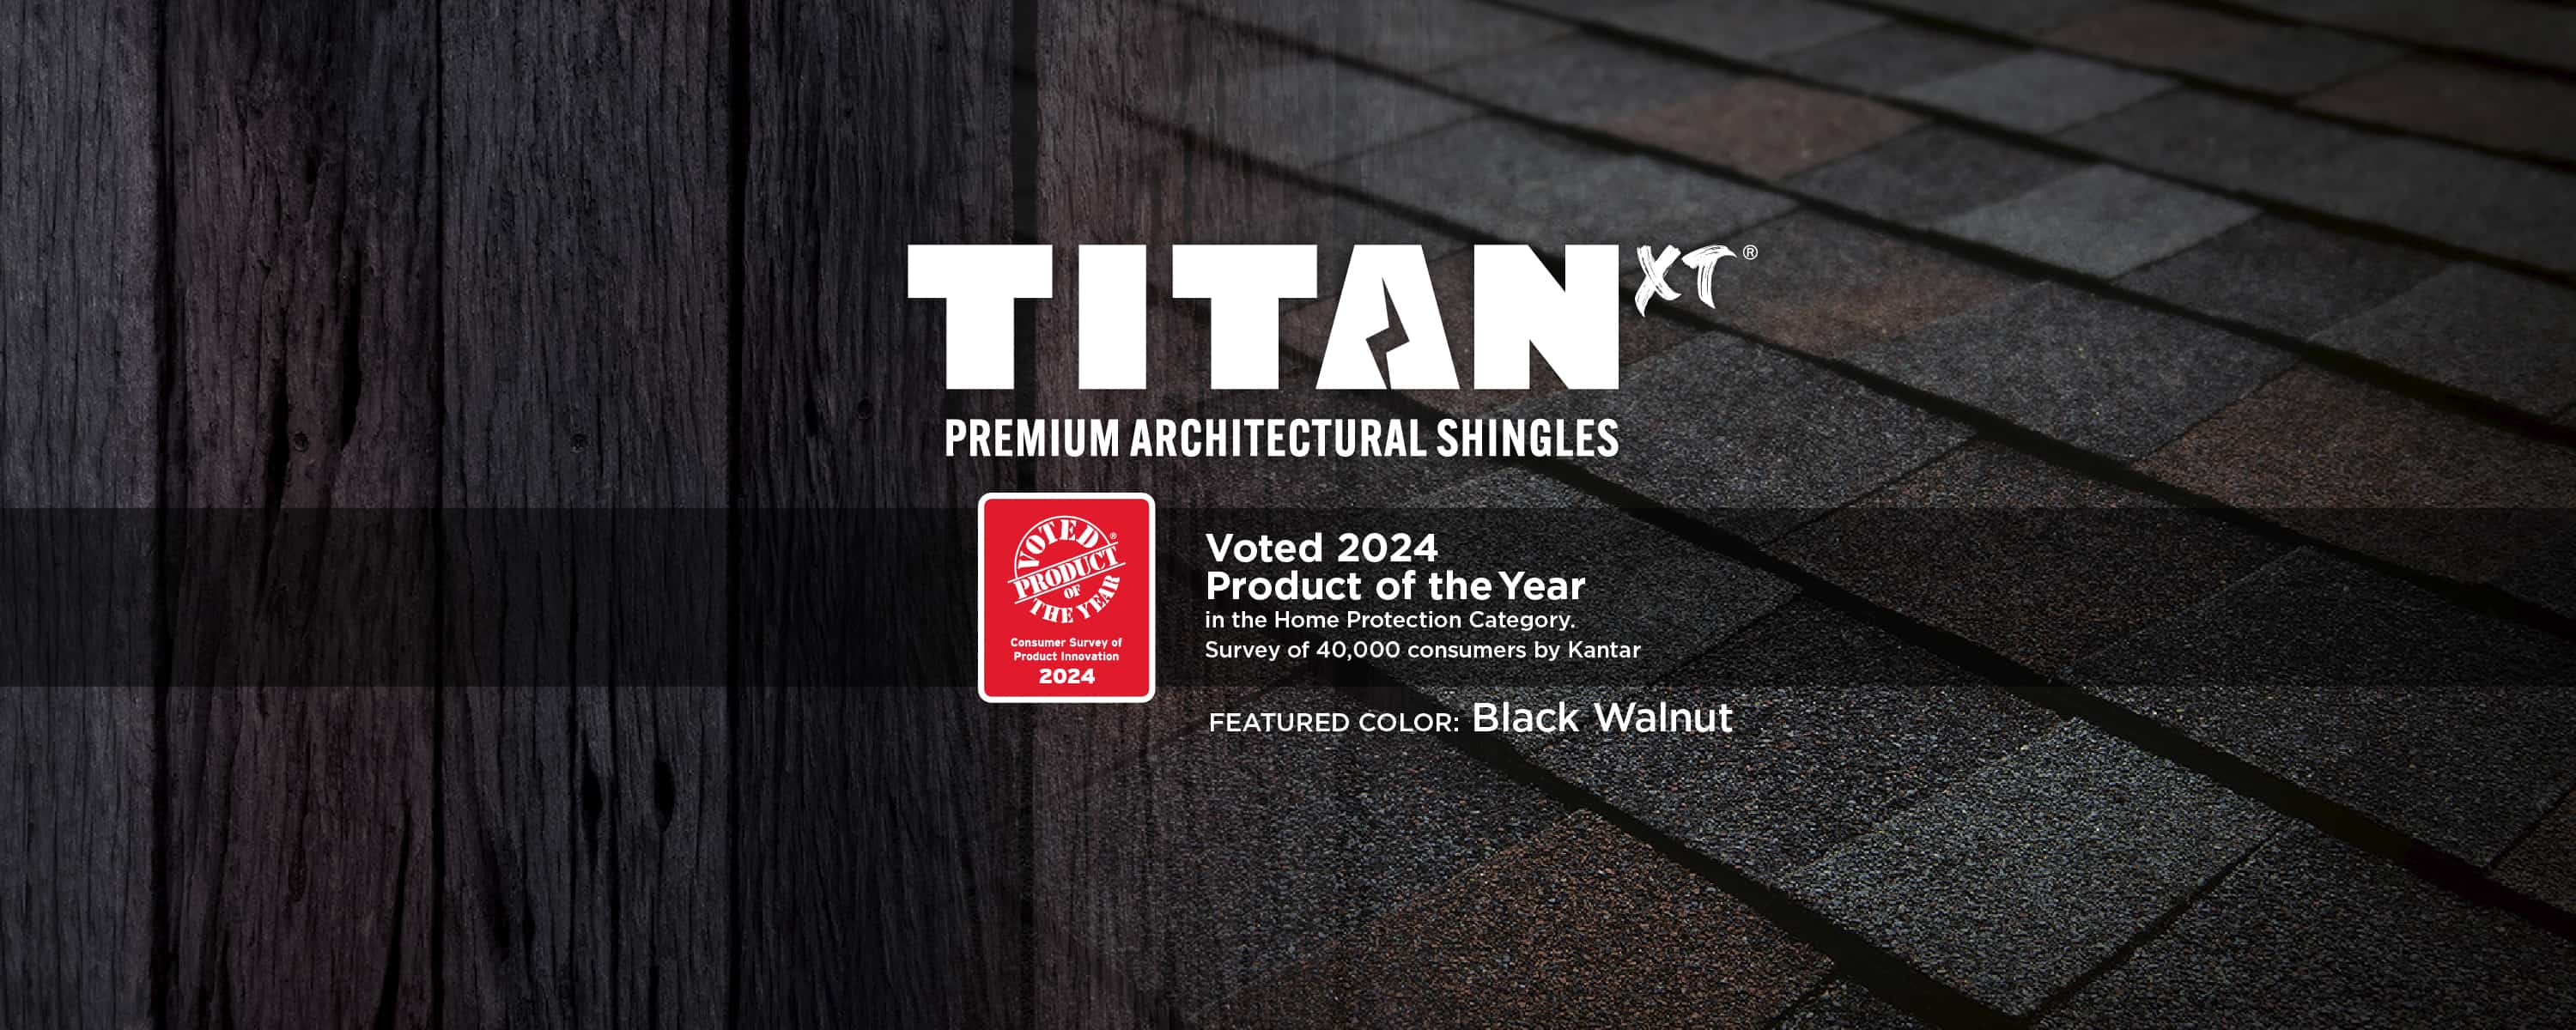 Titan XT 2024 Product of the Year - Black Walnut